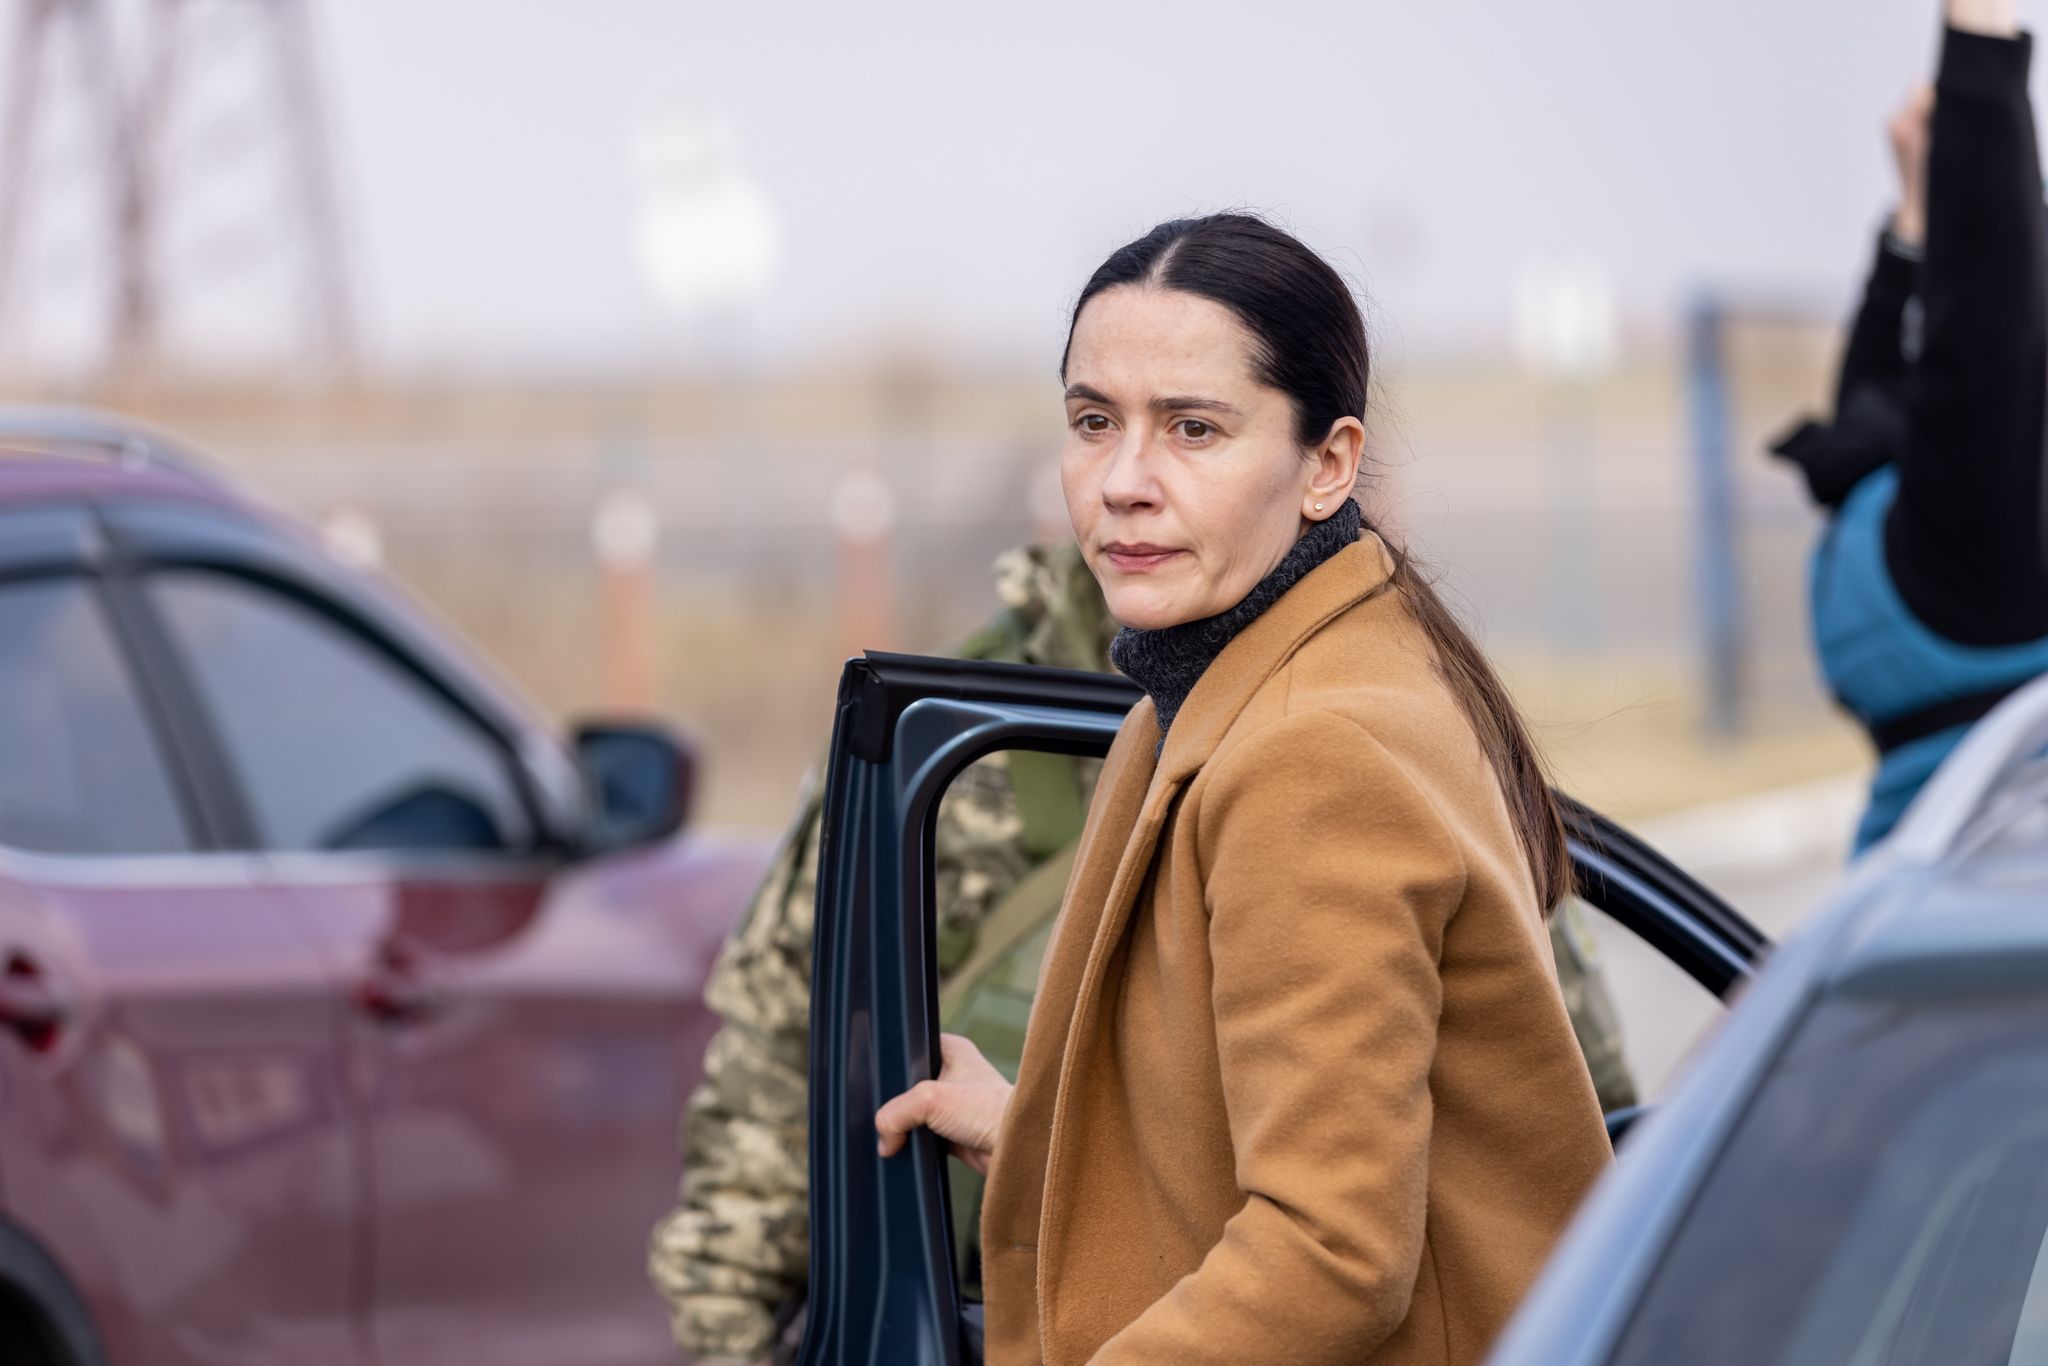 Die ukrainische Therapeutin Lydia (Anastasia Karpenko) bietet Mitfahrmöglichkeiten in ihrem Auto an.